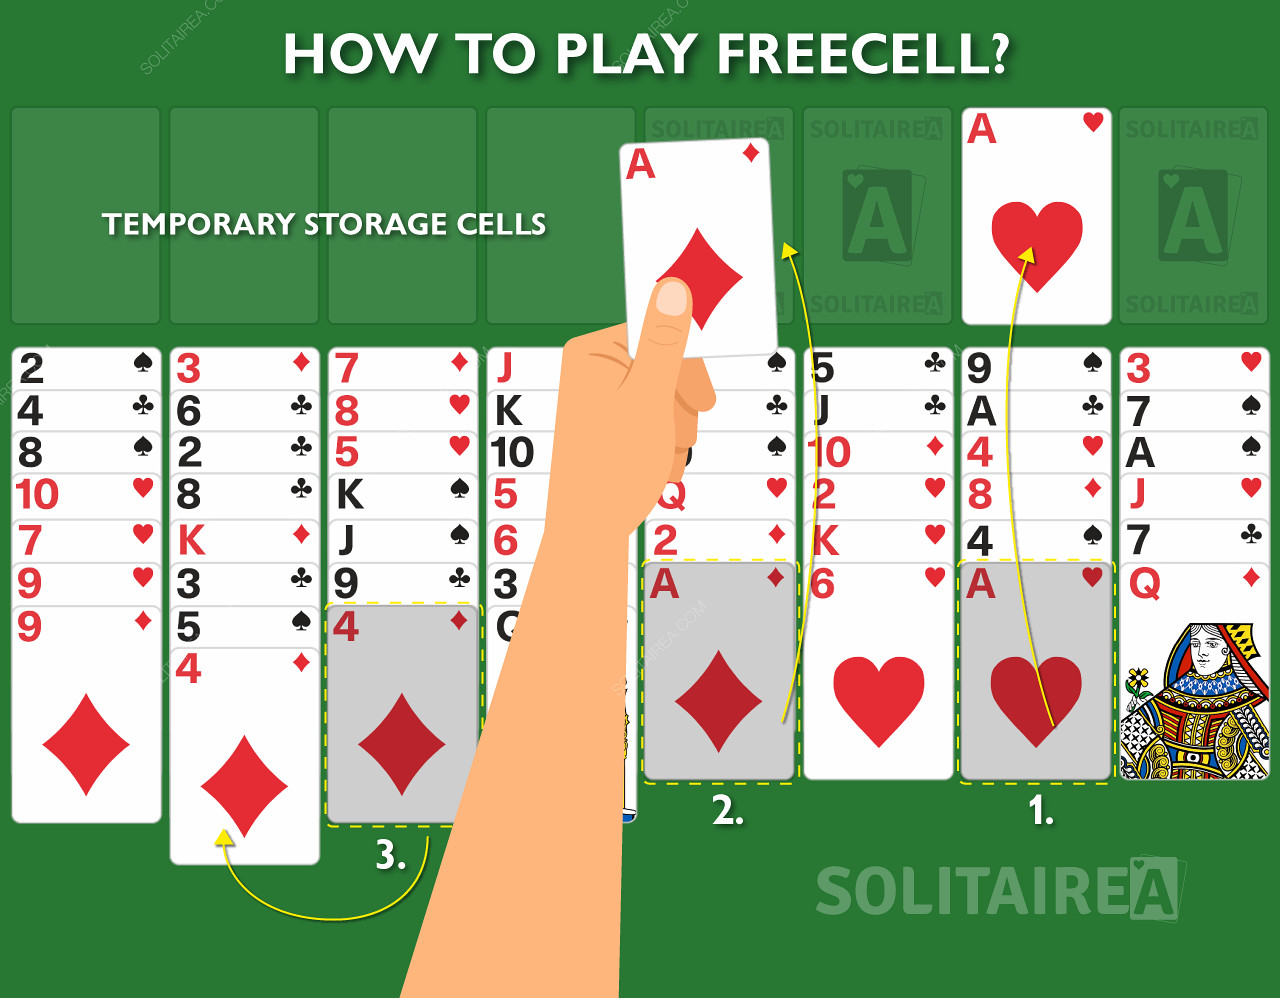 Πώς λειτουργεί το παιχνίδι FreeCell Solitaire